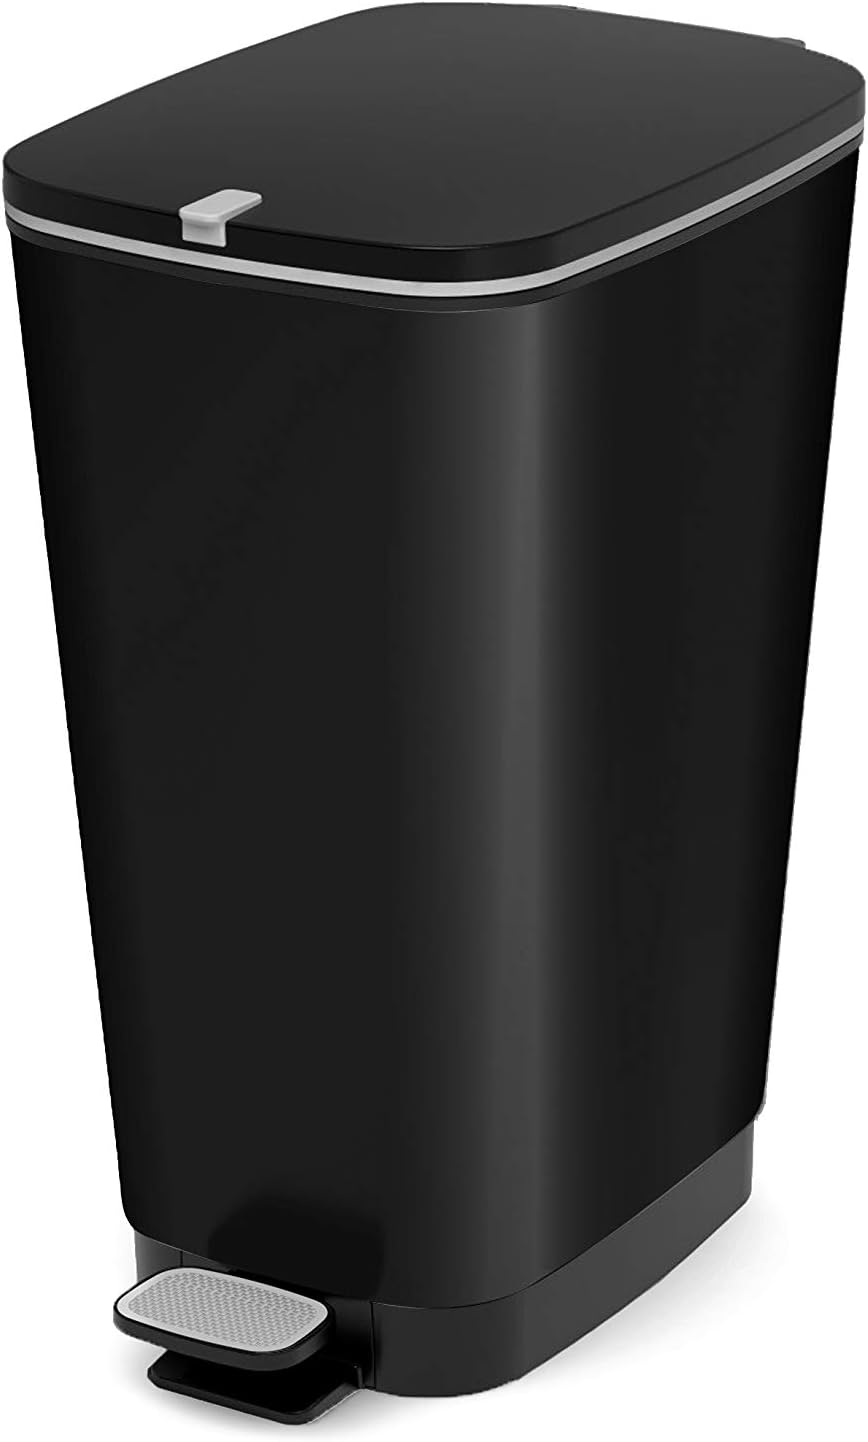 Curver KIS Chic Bin Style Treteimer 45 Liter mit Deckel und Pedal, Müllbeutelaufhängung, schwarz metallic, 29 x44,5 x 60,5 cm